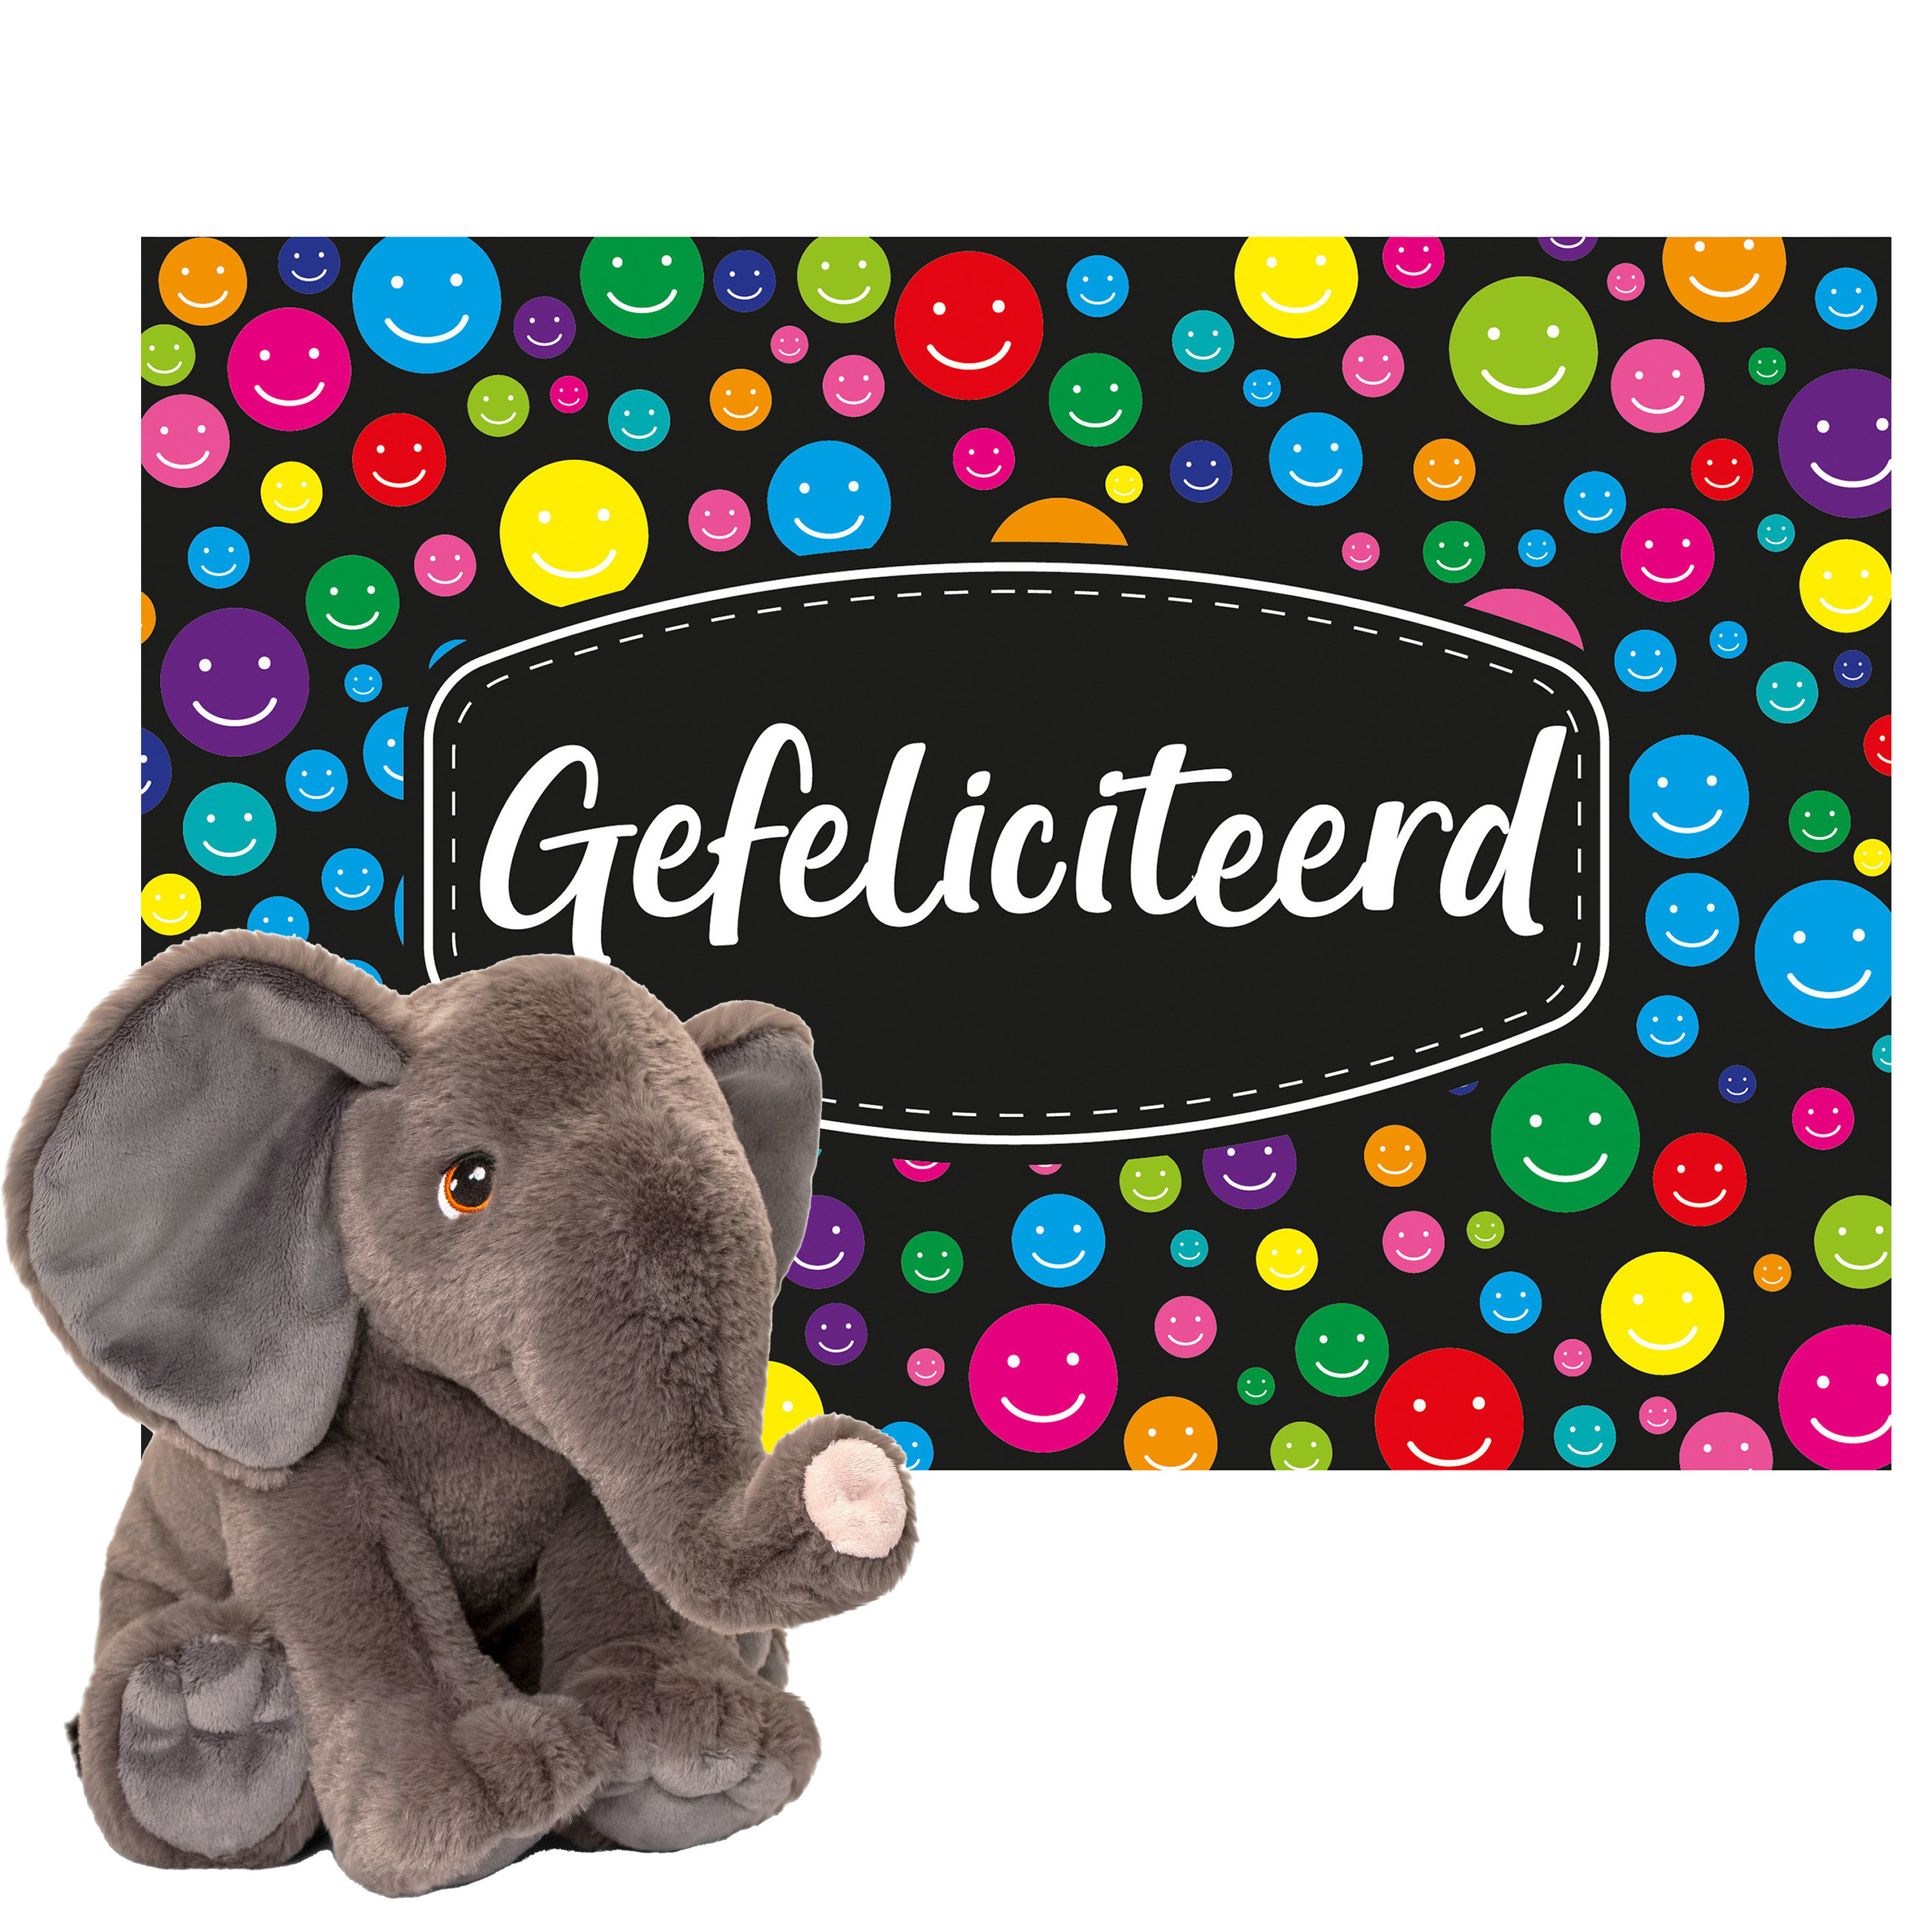 Keel toys Cadeaukaart Gefeliciteerd met knuffeldier olifant 35 cm